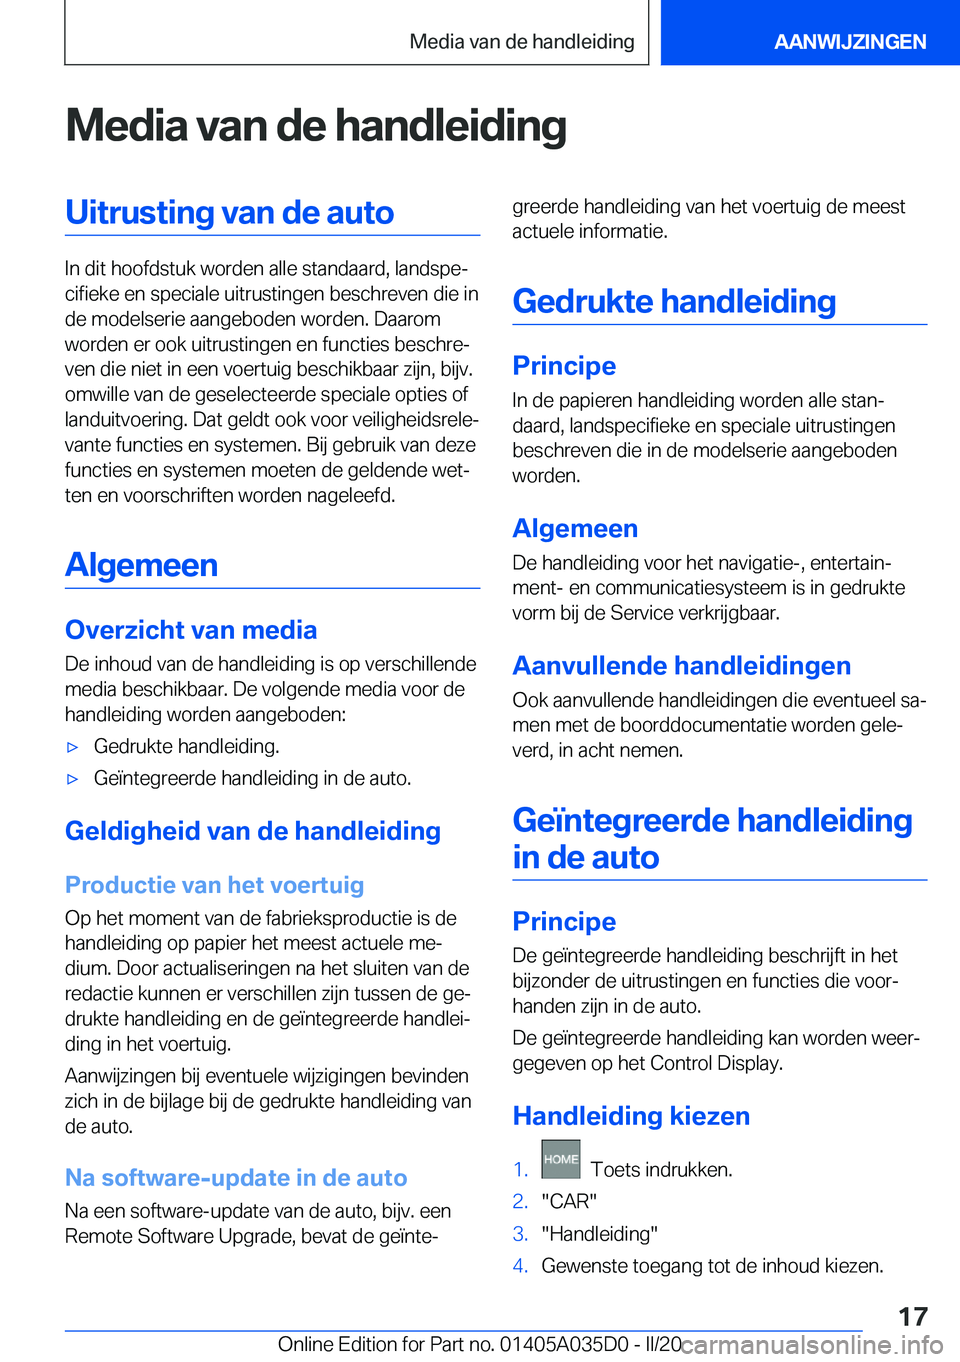 BMW X4 2020  Instructieboekjes (in Dutch) �M�e�d�i�a��v�a�n��d�e��h�a�n�d�l�e�i�d�i�n�g�U�i�t�r�u�s�t�i�n�g��v�a�n��d�e��a�u�t�o
�I�n��d�i�t��h�o�o�f�d�s�t�u�k��w�o�r�d�e�n��a�l�l�e��s�t�a�n�d�a�a�r�d�,��l�a�n�d�s�p�ej�c�i�f�i�e�